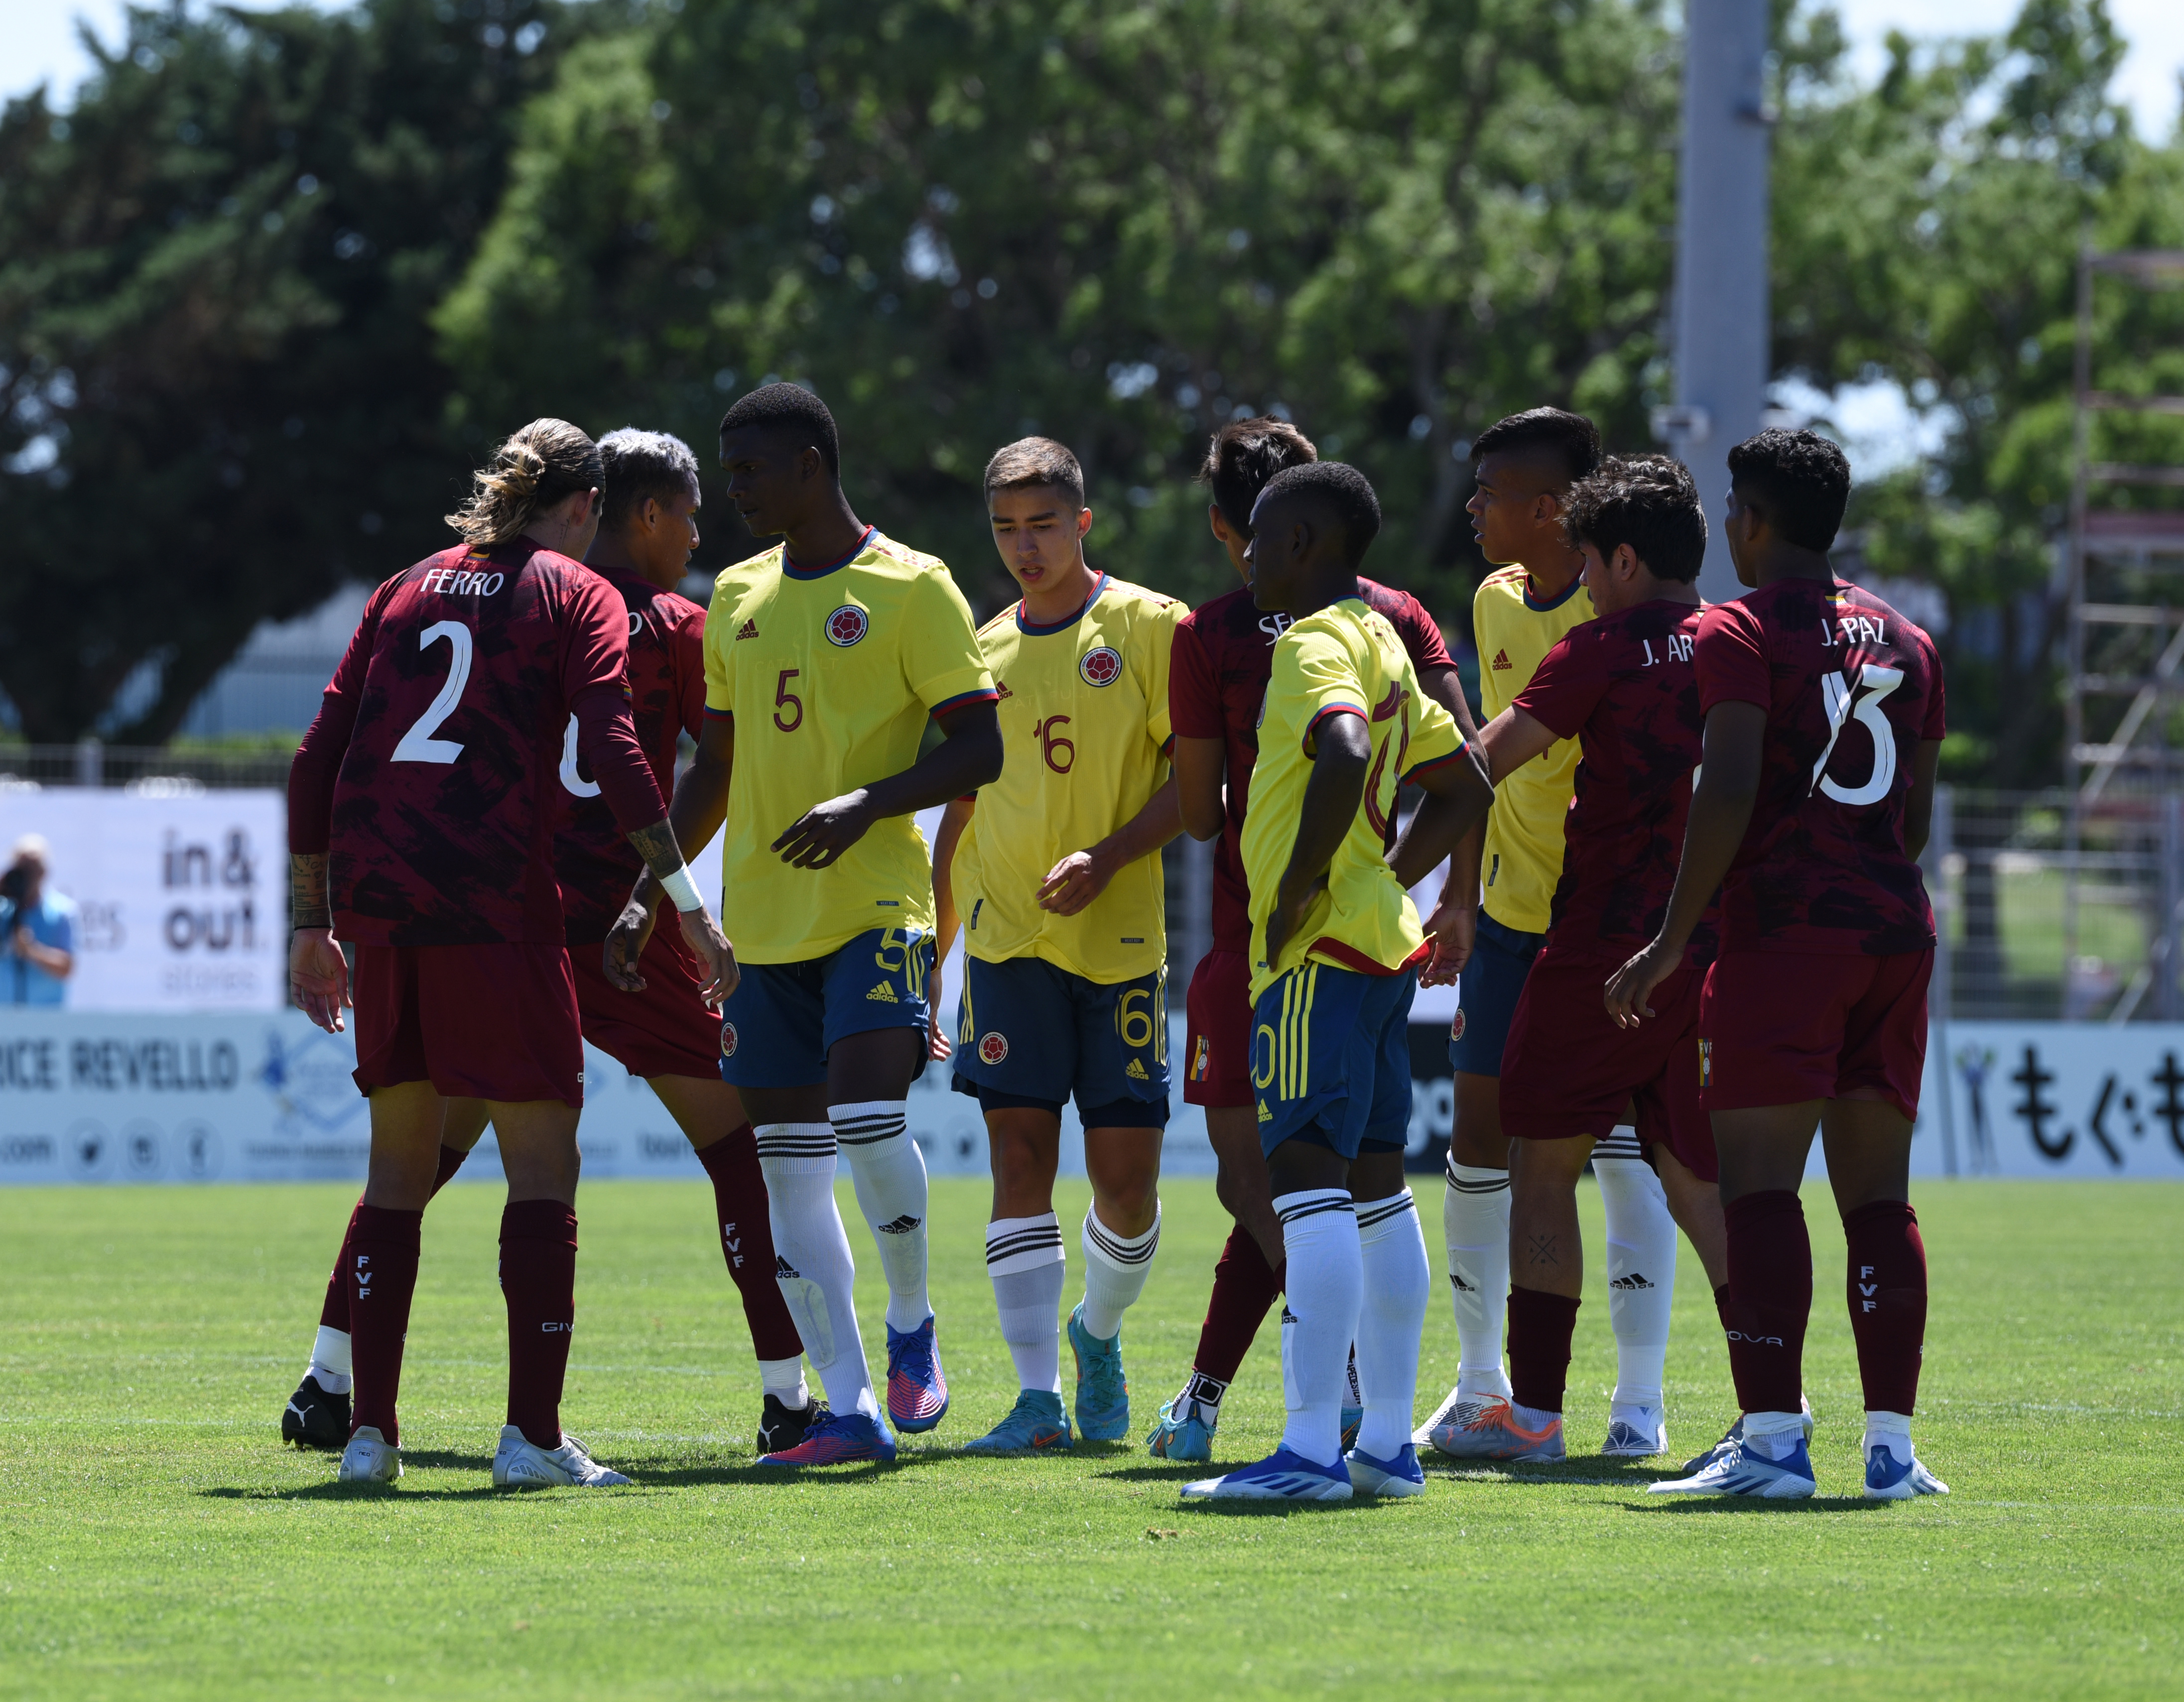 La selección Colombia perdió en la semifinal del torneo Maurice Revello ante Venezuela en la tanda de penaltis